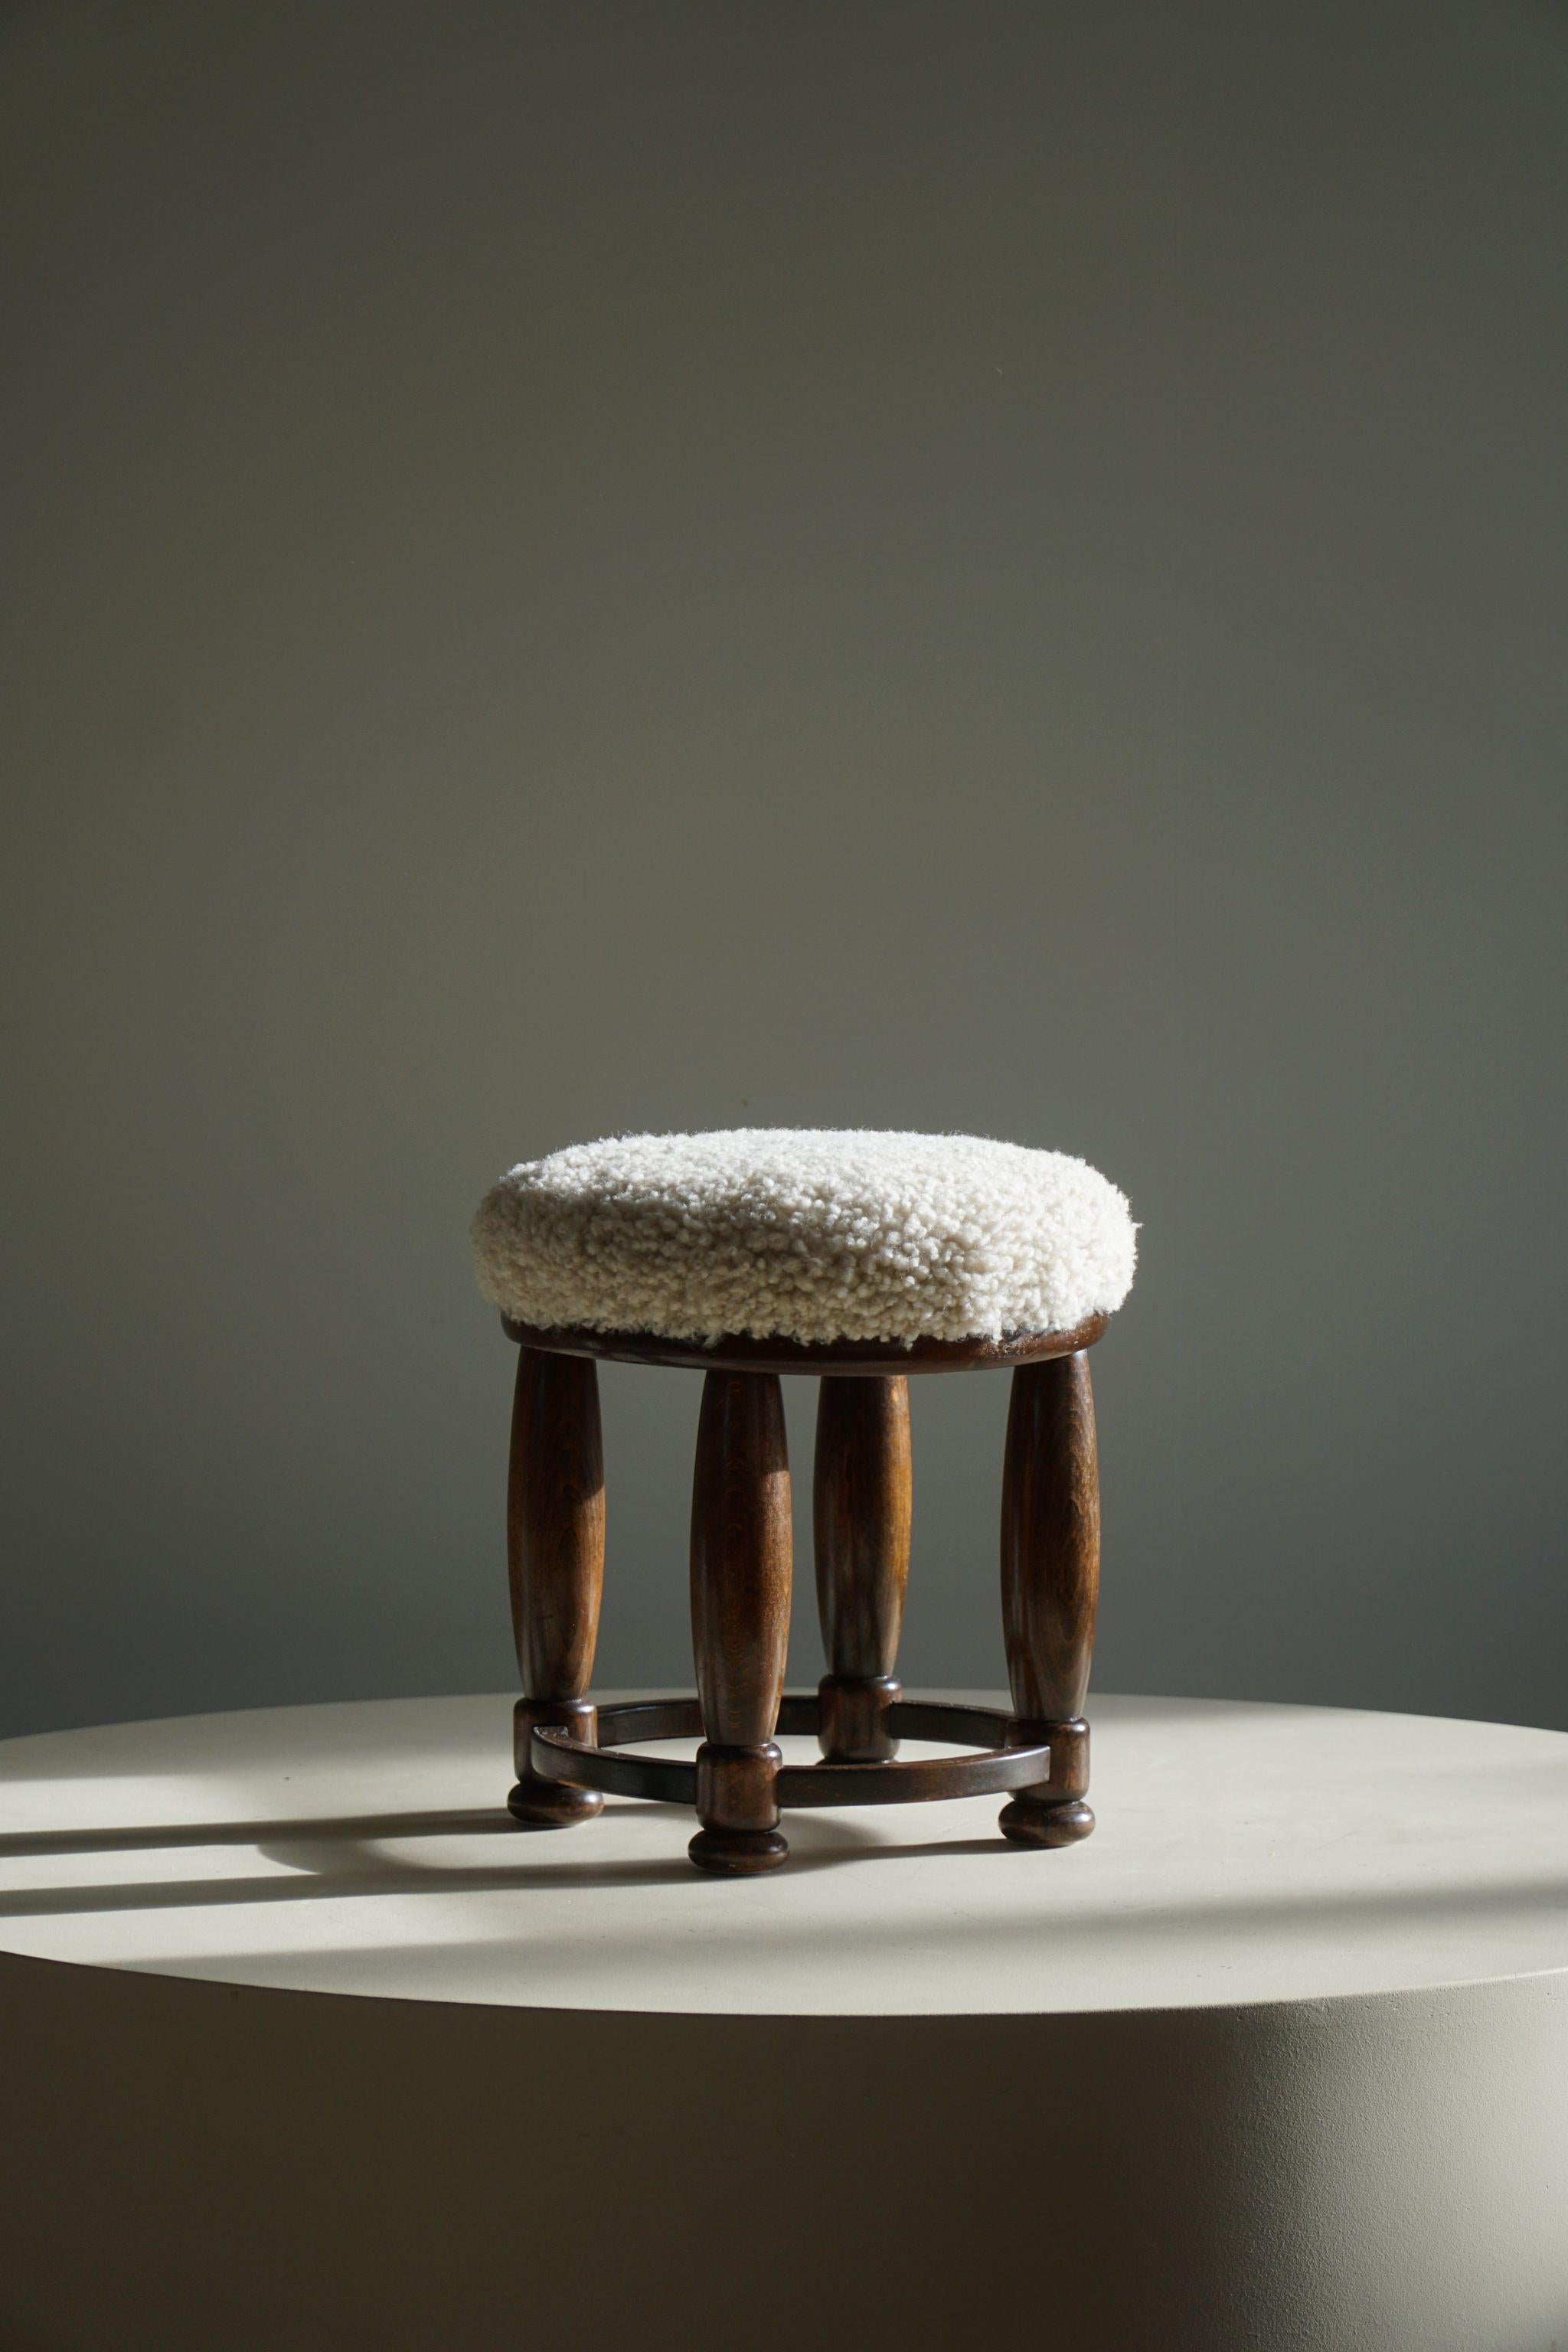 Ein schöner runder Art-Déco-Hocker aus Buche mit einem neu gepolsterten Sitz aus Lammfell von hoher Qualität. Hergestellt von einem dänischen Möbelschreiner in den 1940er Jahren.

Dieser schöne Hocker passt zu vielen Einrichtungsstilen. Eine